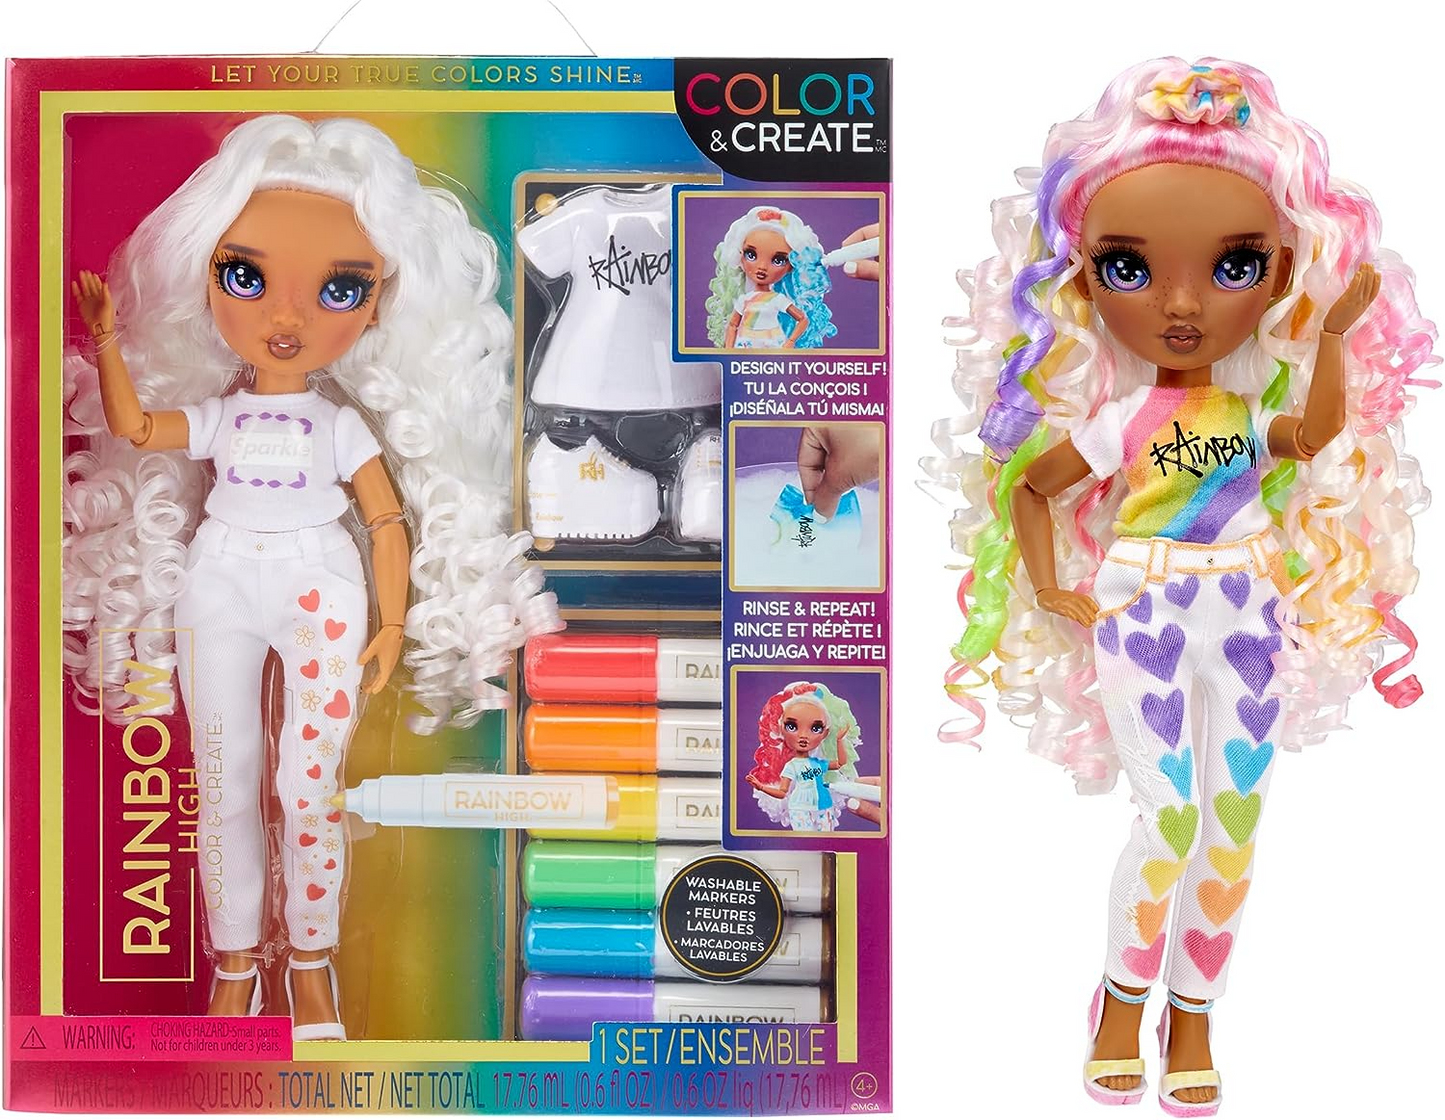 Rainbow High Colorir e criar boneca DIY moderna - olhos roxos, cabelos cacheados, blusa e sapatos bônus e marcadores de arco-íris laváveis - colorir, criar, brincar, enxaguar, repetir - para crianças de 4 a 12 anos e colecionadores